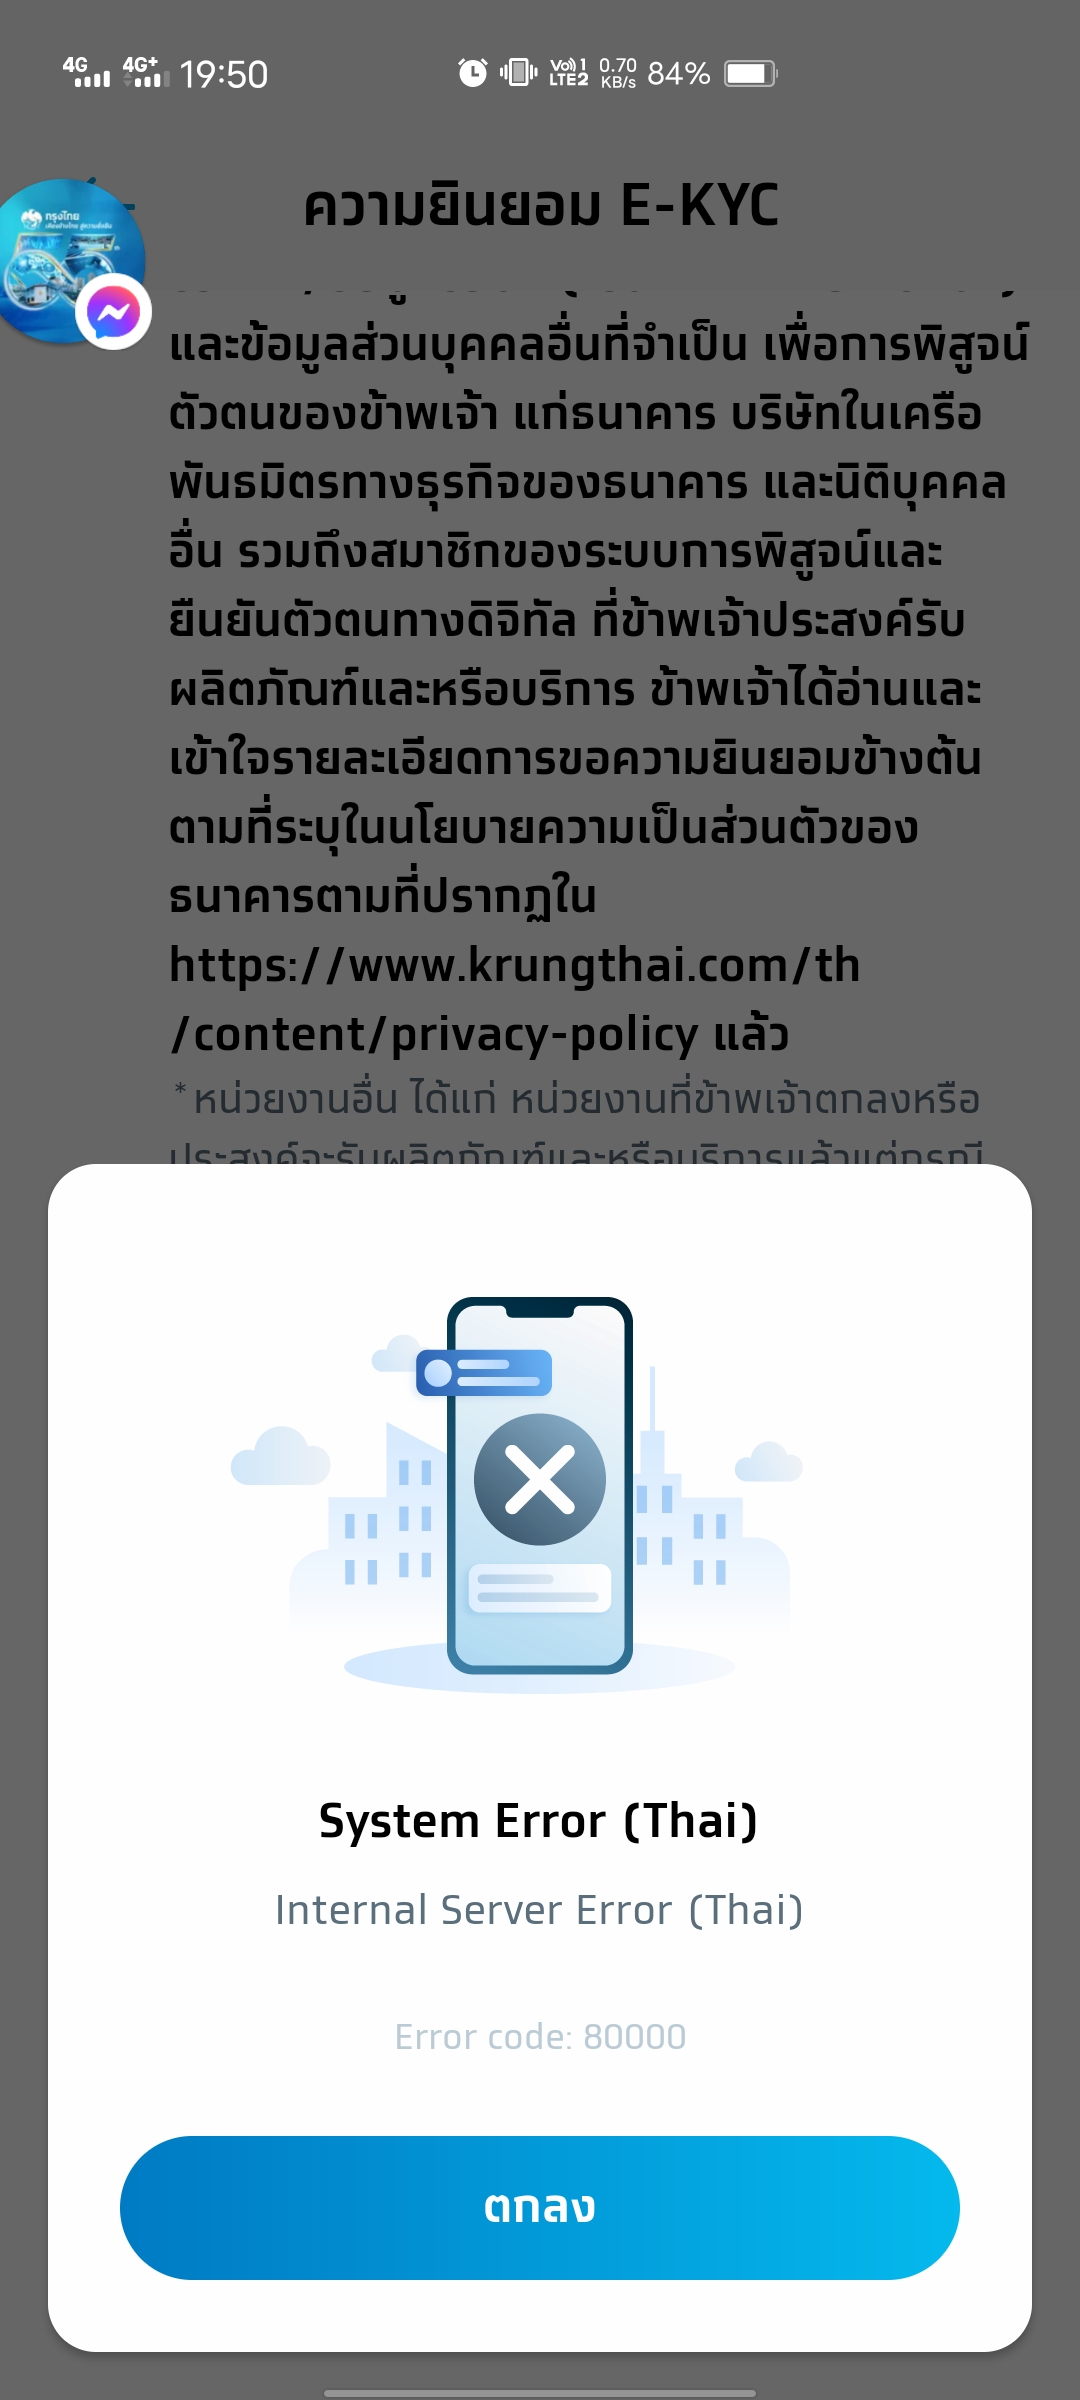 สมัครบัญชีออนไลน์ของ กรุงไทย ไม่ได้ - Pantip